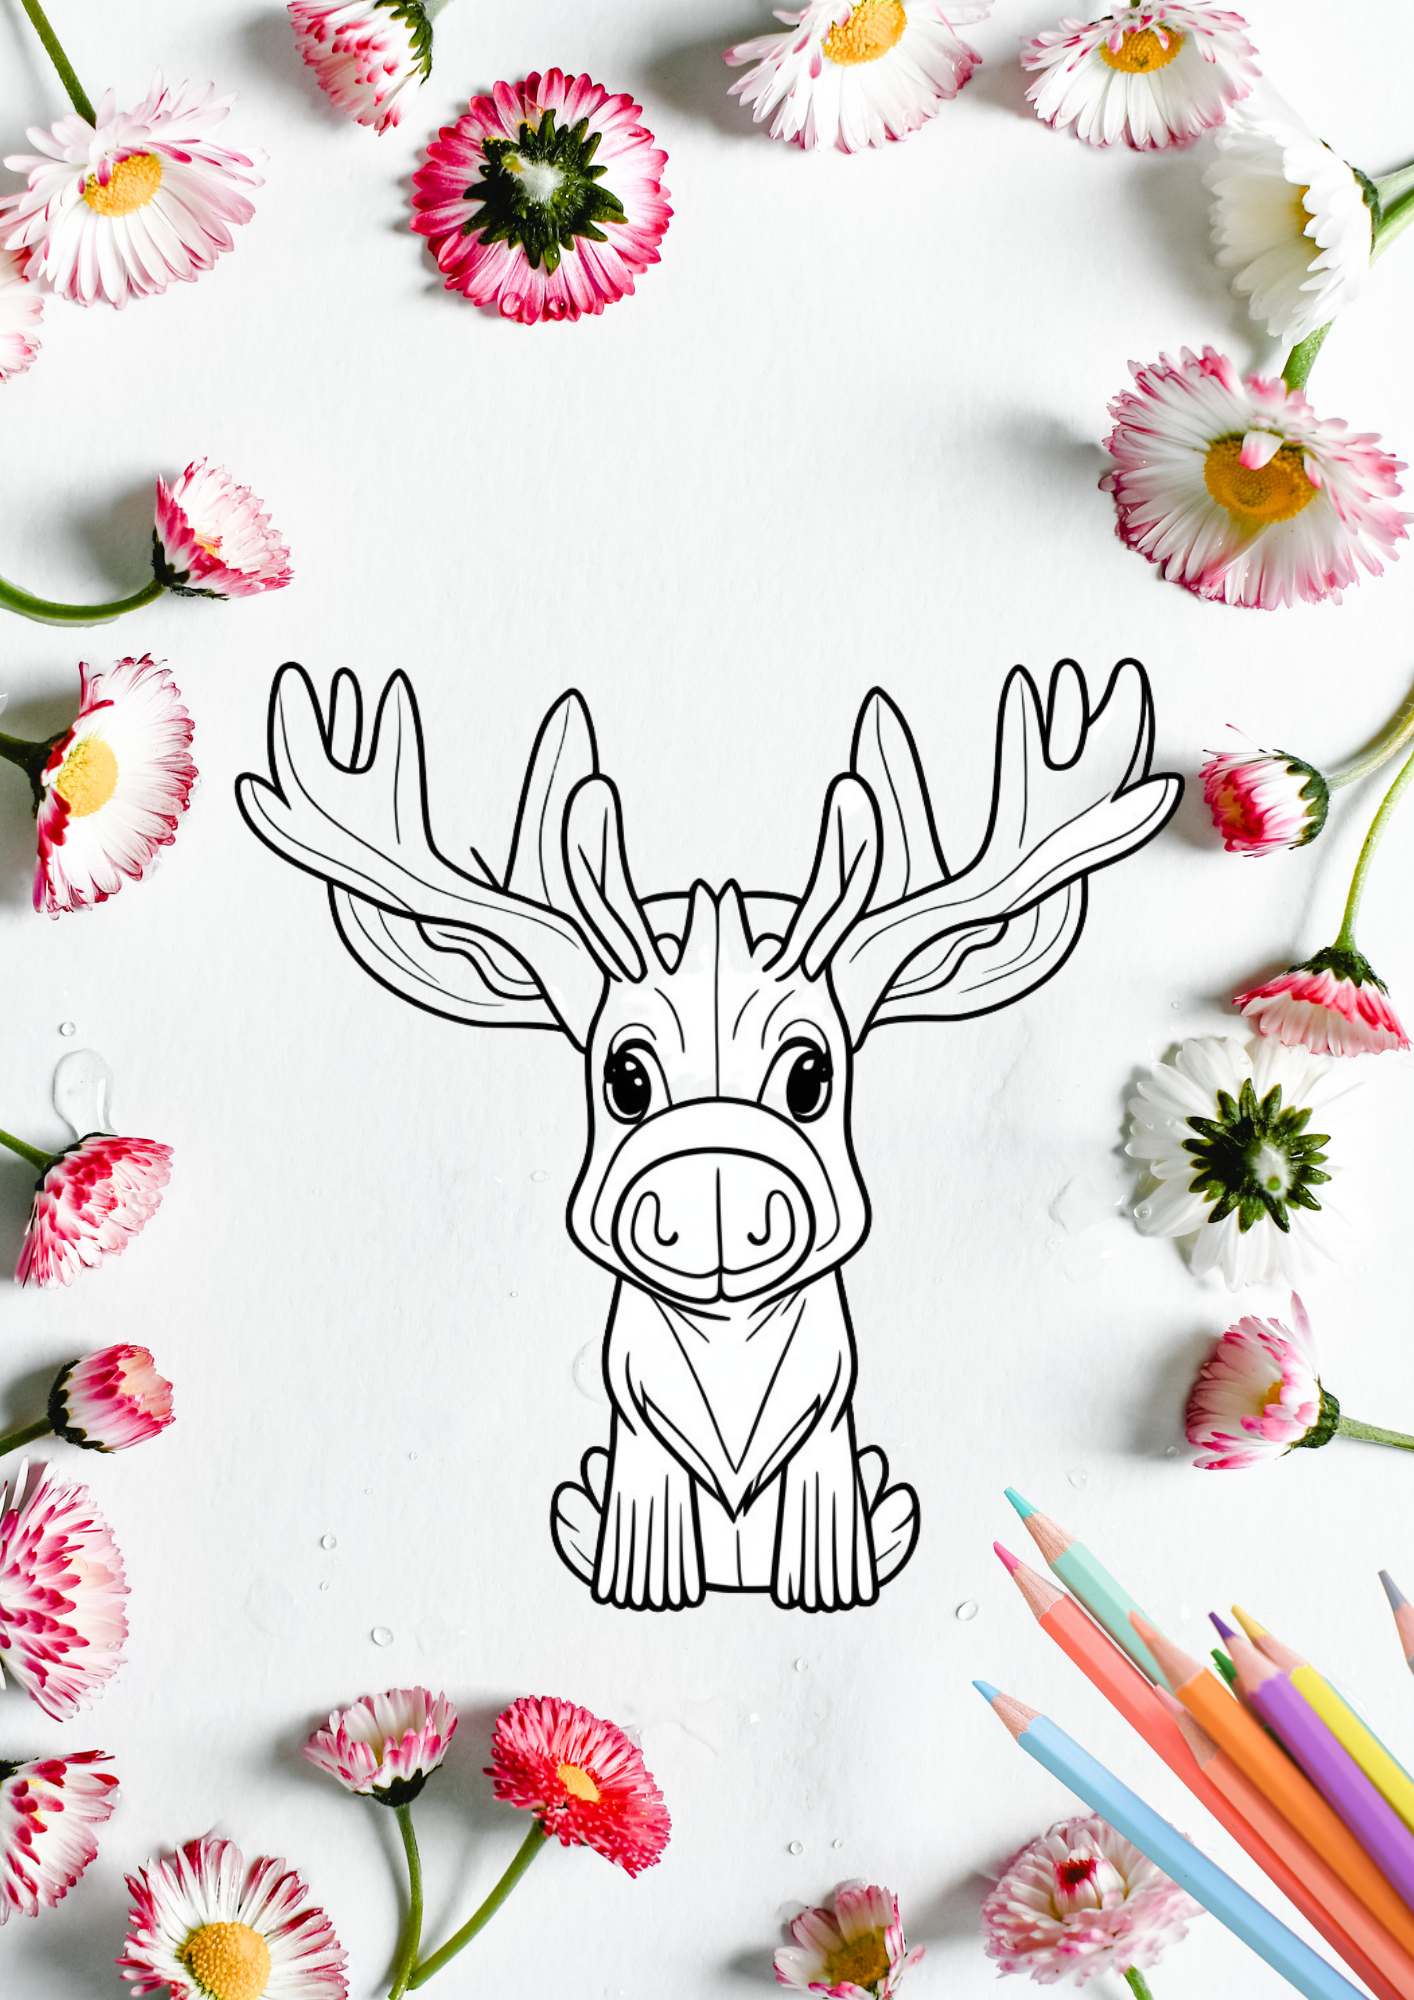 Fargelegg dyr fra jungelen | 70 enkle tegninger med dyr | PDF til utskrift